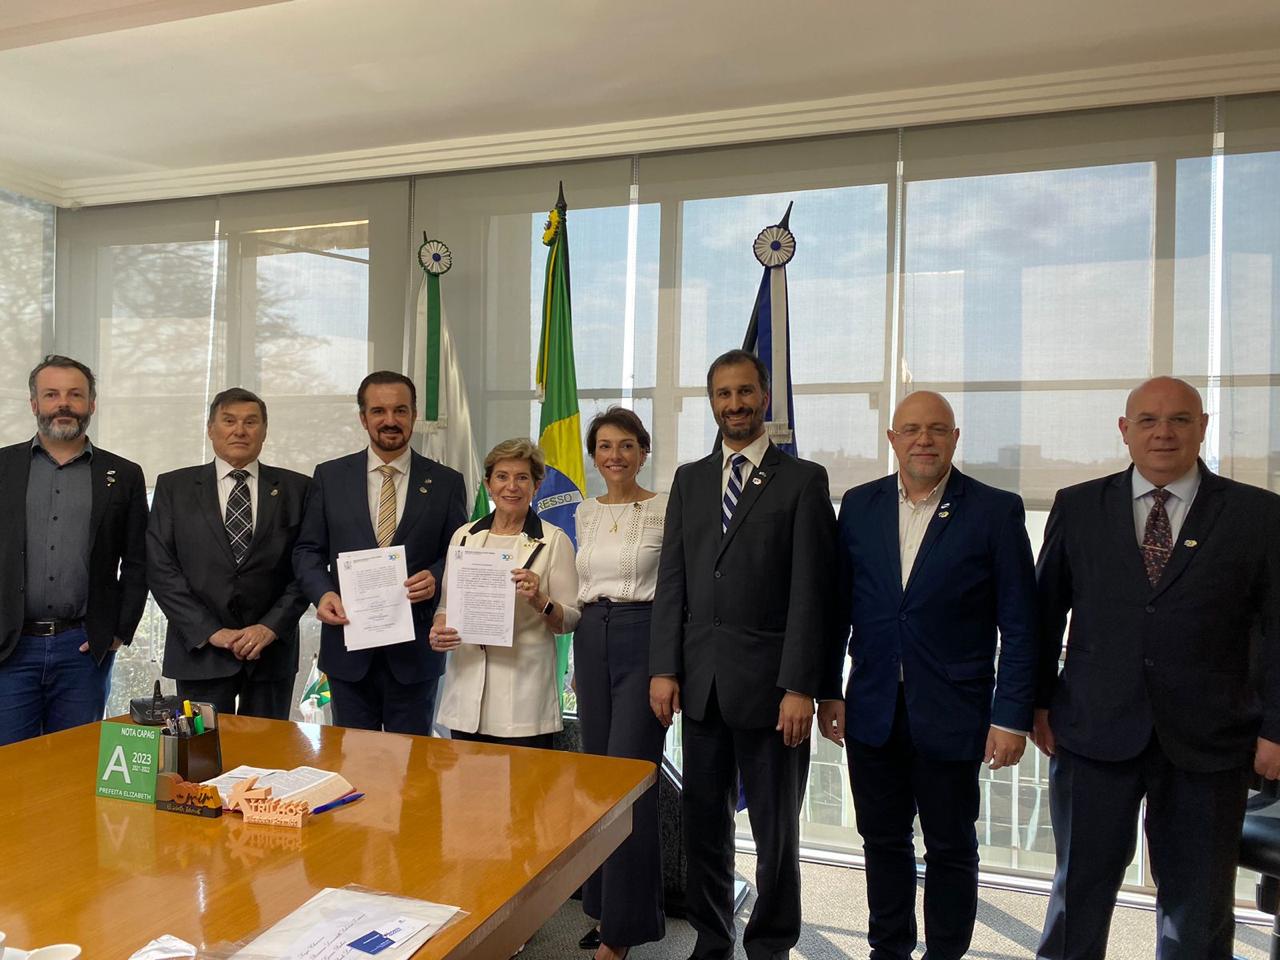 A assinatura contou com a presença de representantes da entidade que apoia investimentos finlandeses no Brasil